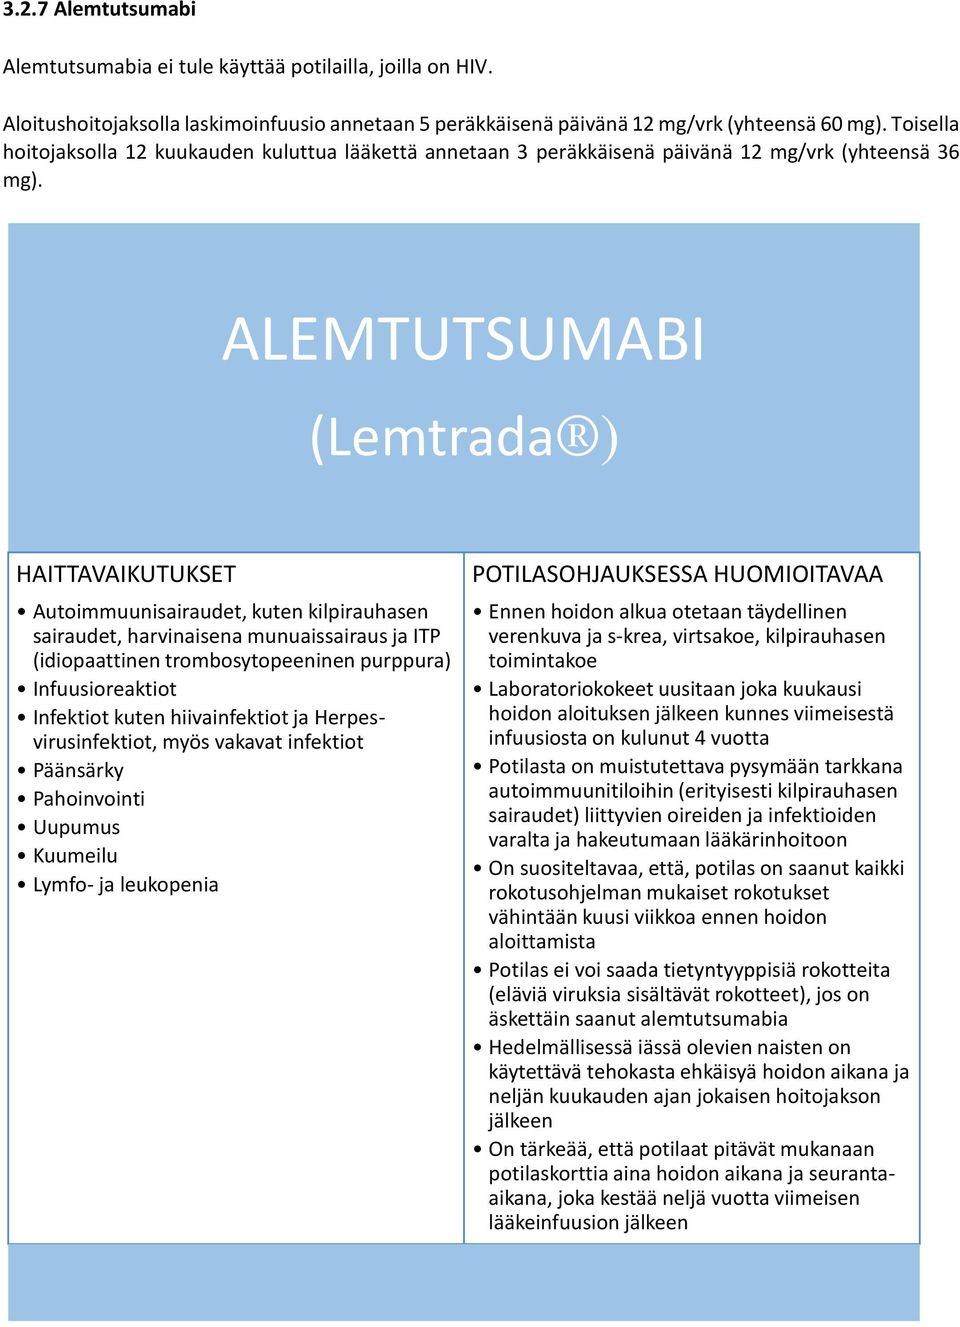 ALEMTUTSUMABI (Lemtrada ) HAITTAVAIKUTUKSET Autoimmuunisairaudet, kuten kilpirauhasen sairaudet, harvinaisena munuaissairaus ja ITP (idiopaattinen trombosytopeeninen purppura) Infuusioreaktiot